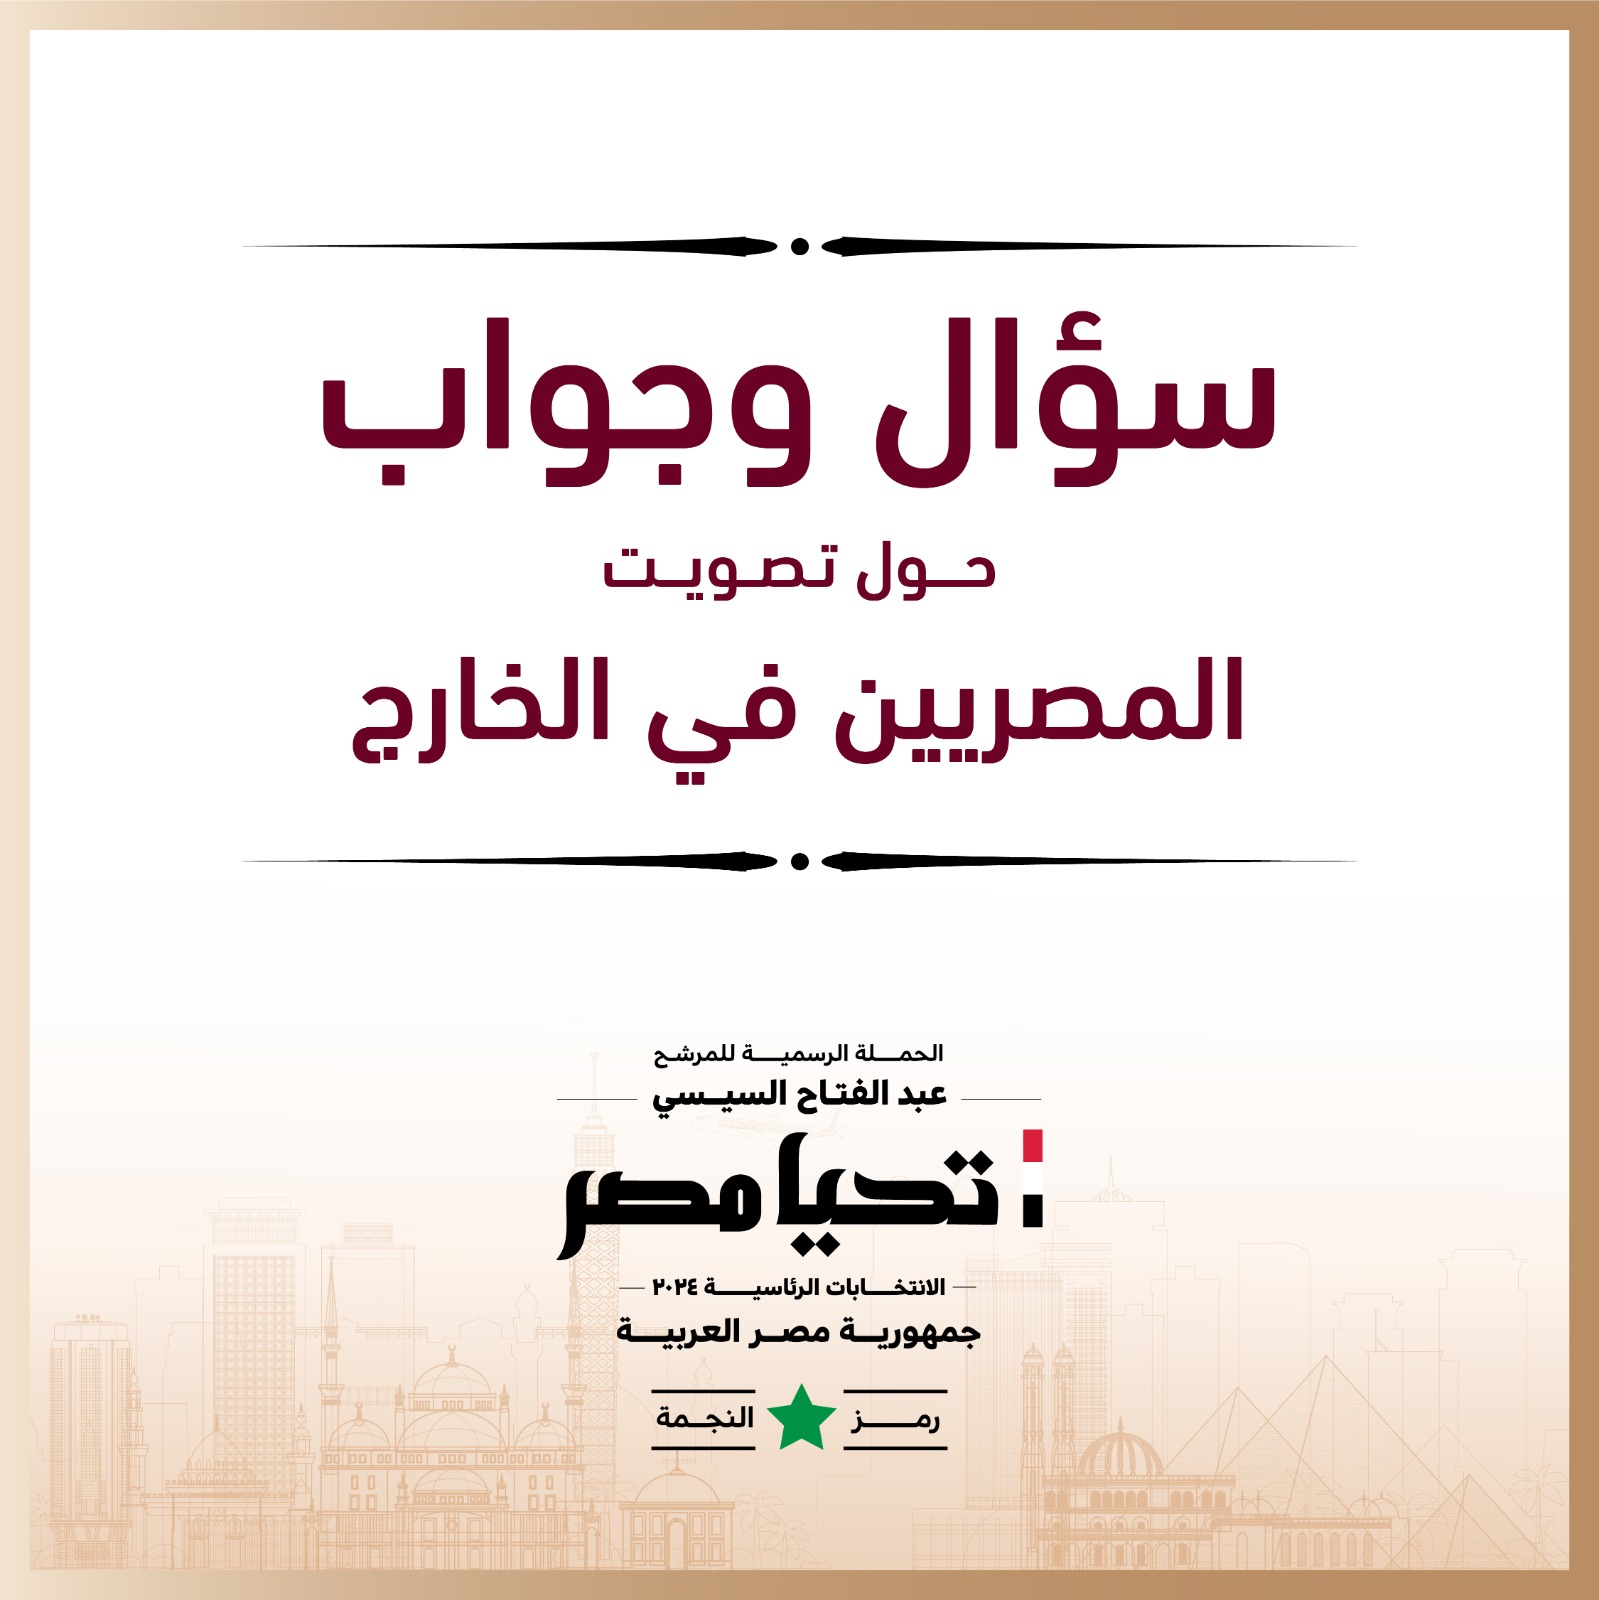 الحملة الرسمية للمرشح عبد الفتاح السيسي  (1)